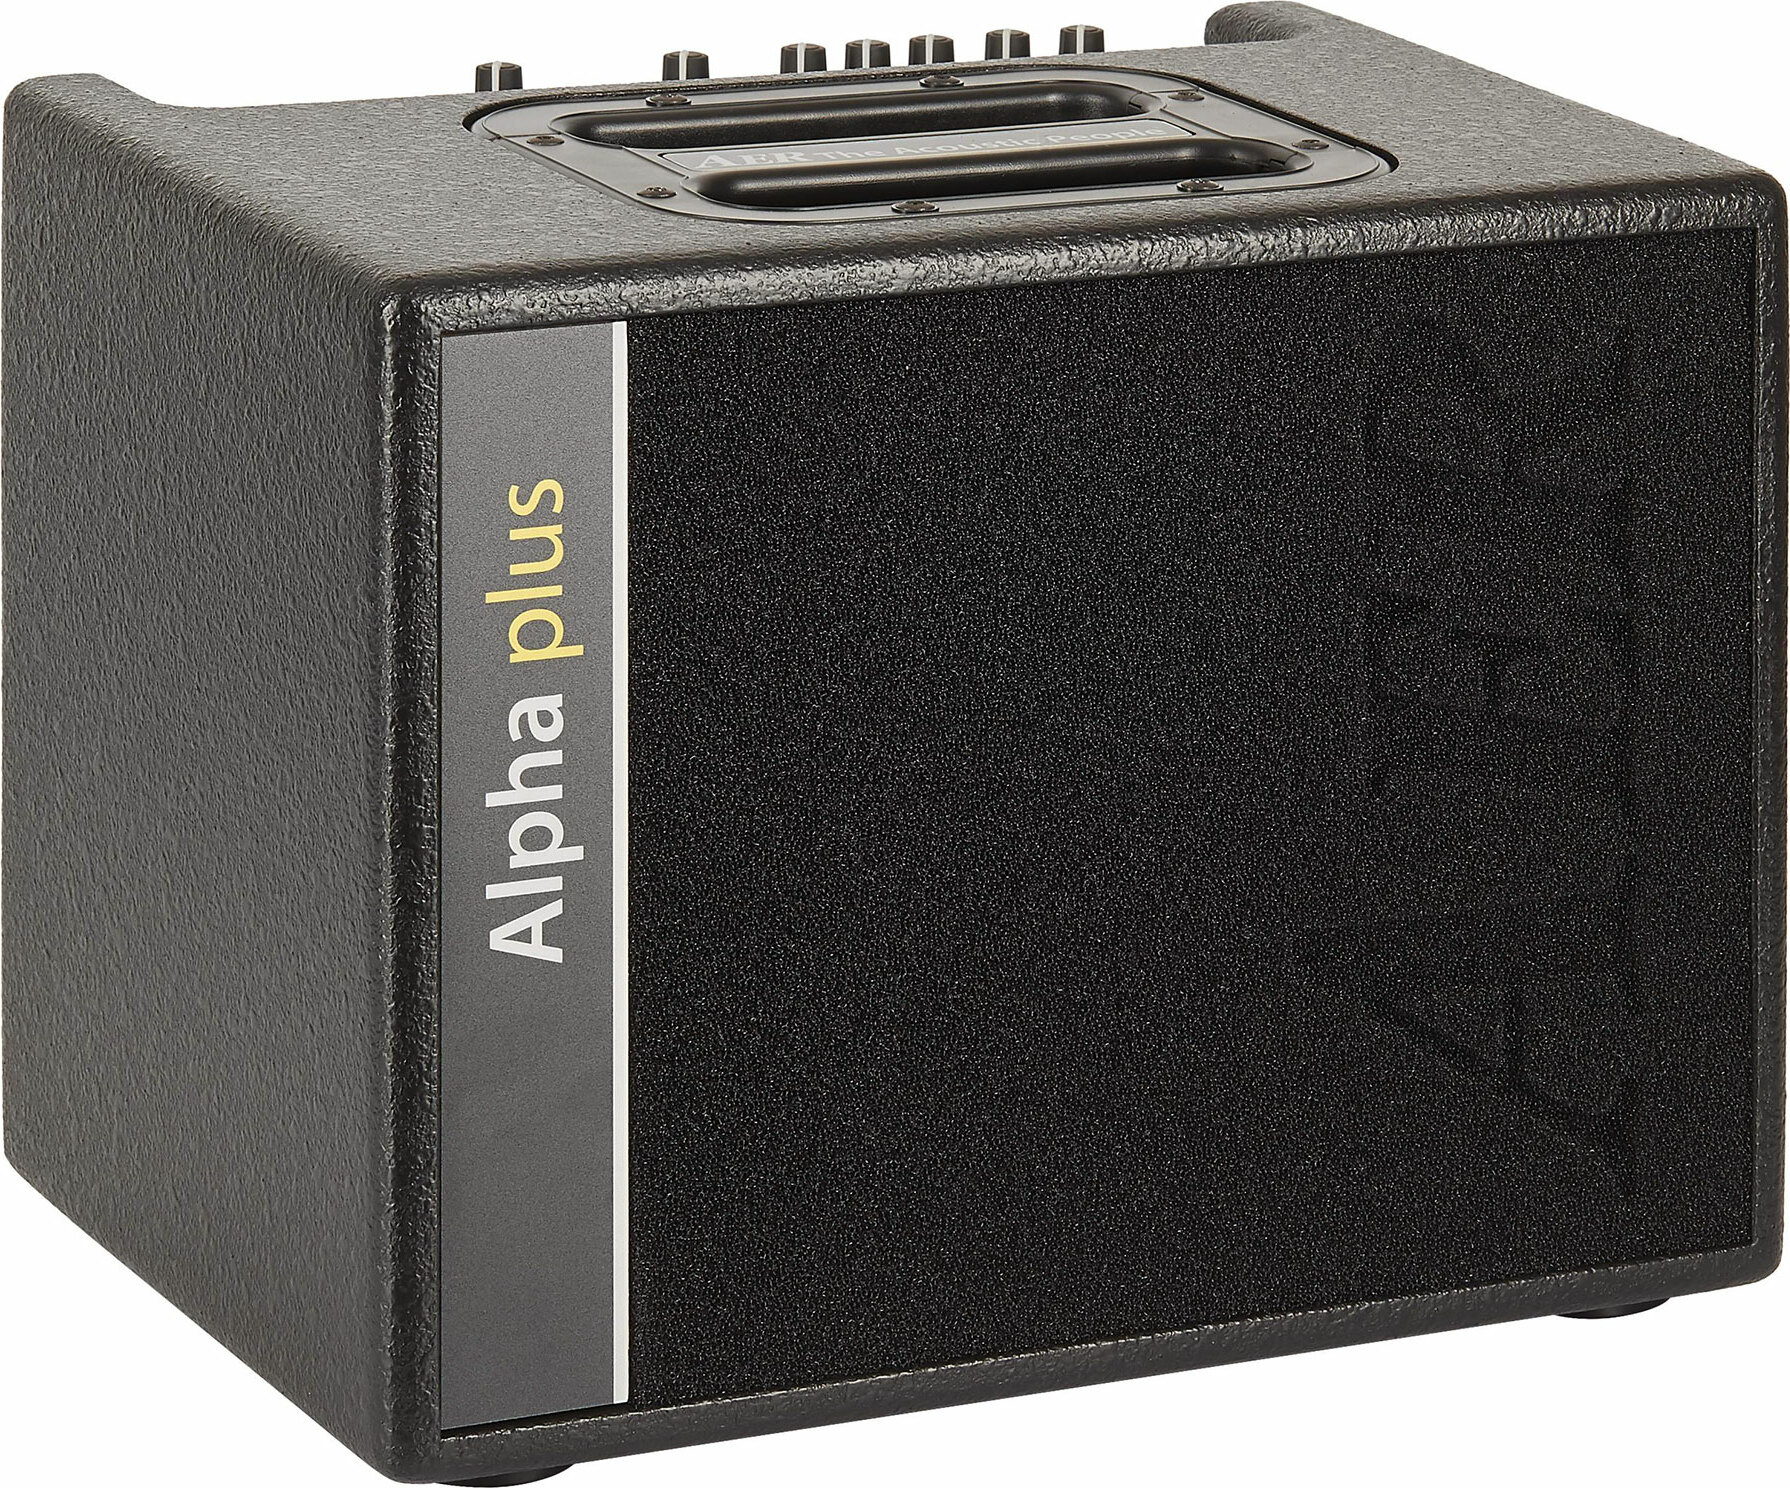 Aer Alpha Plus 40w  1x8 Black +housse - Combo amplificador acústico - Main picture